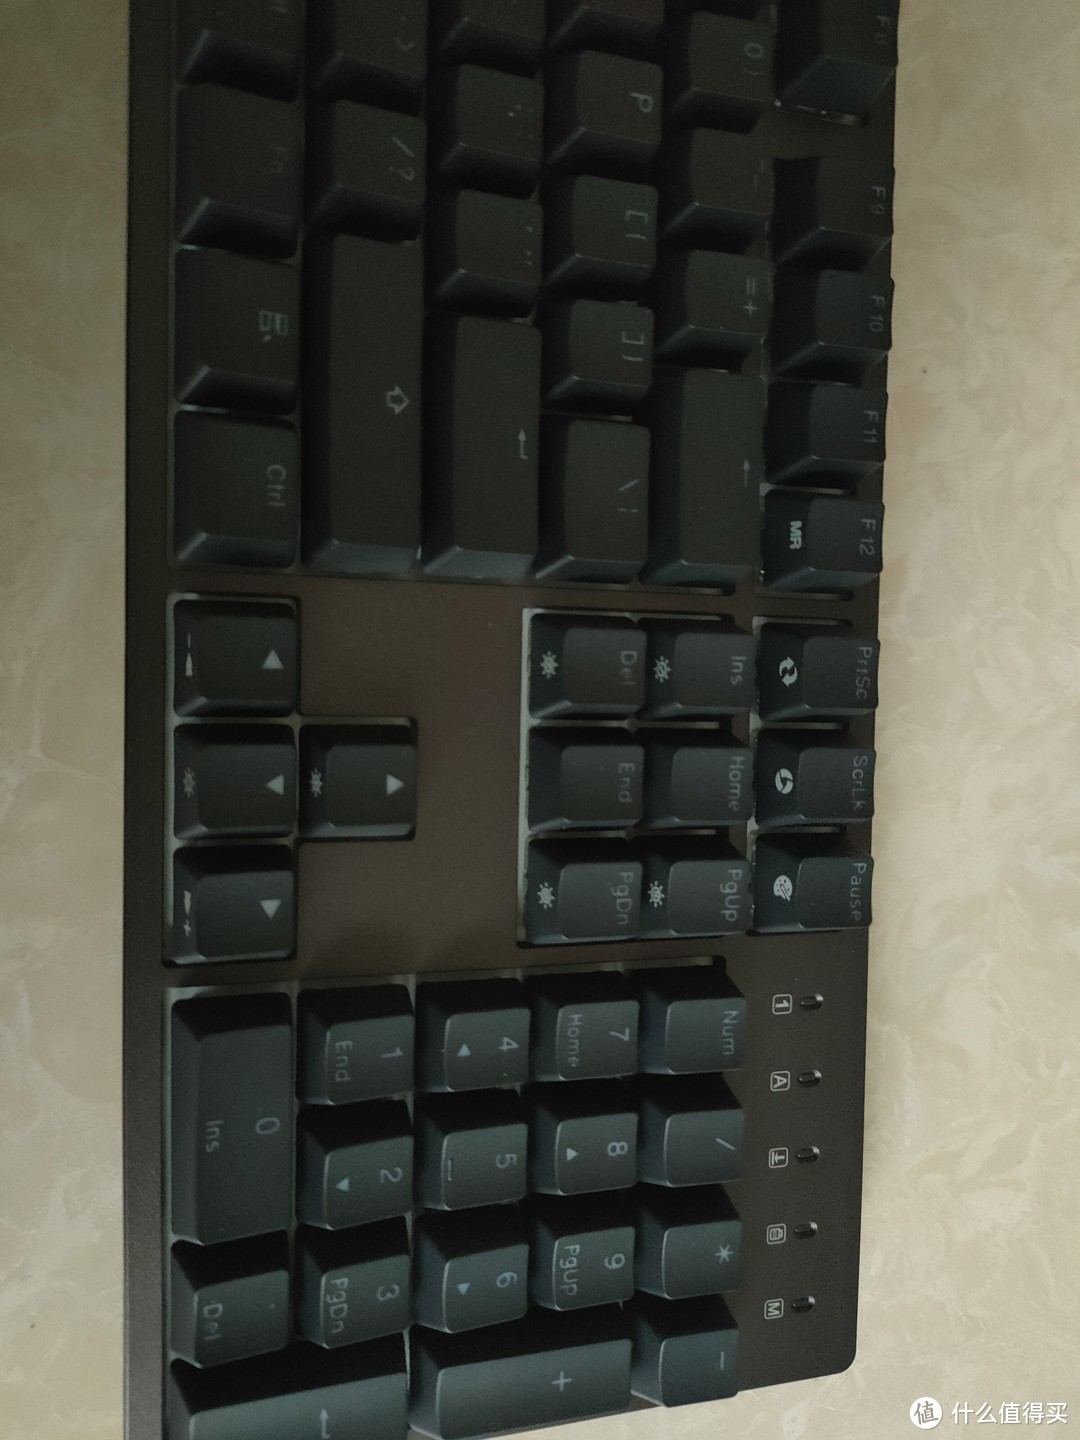 杜伽K310 机械键盘